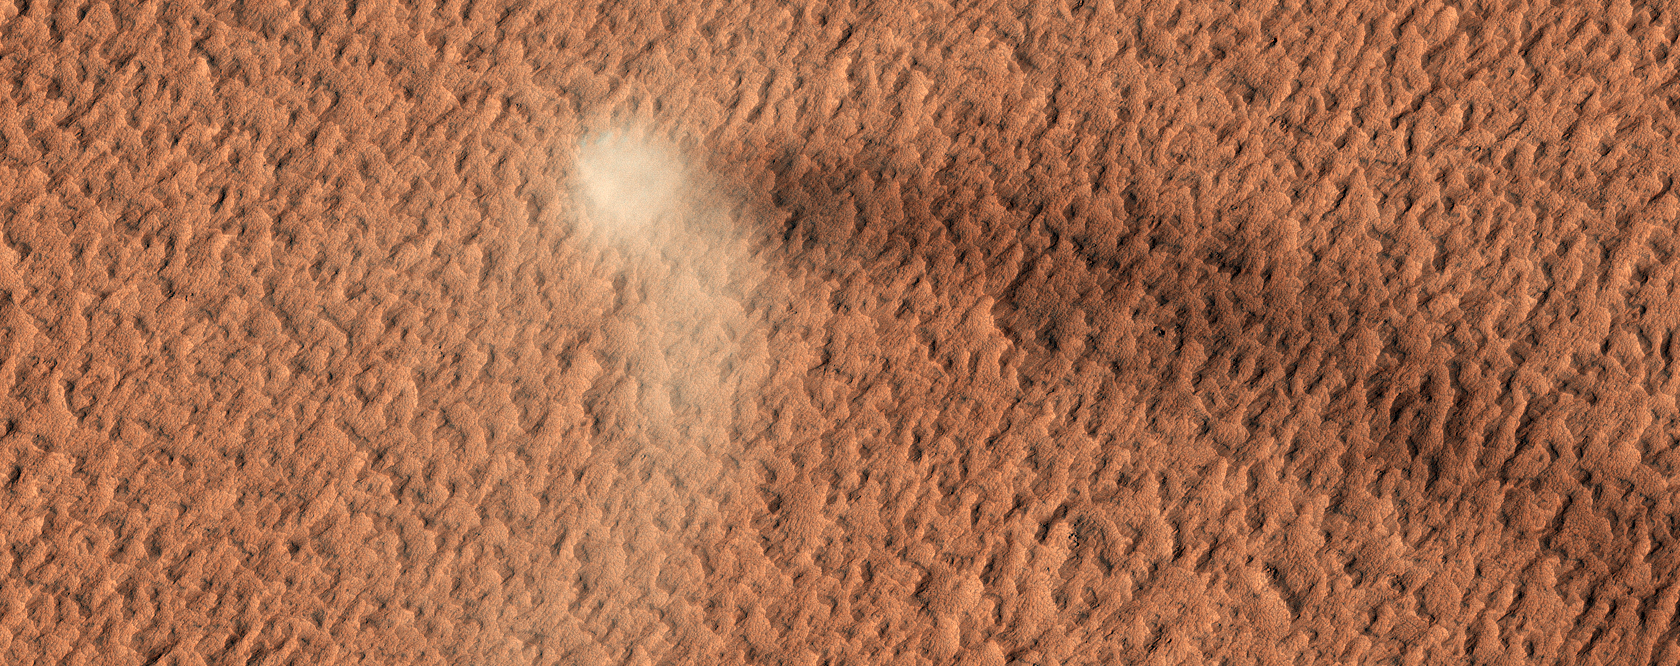 Zandstorm op planeet Mars